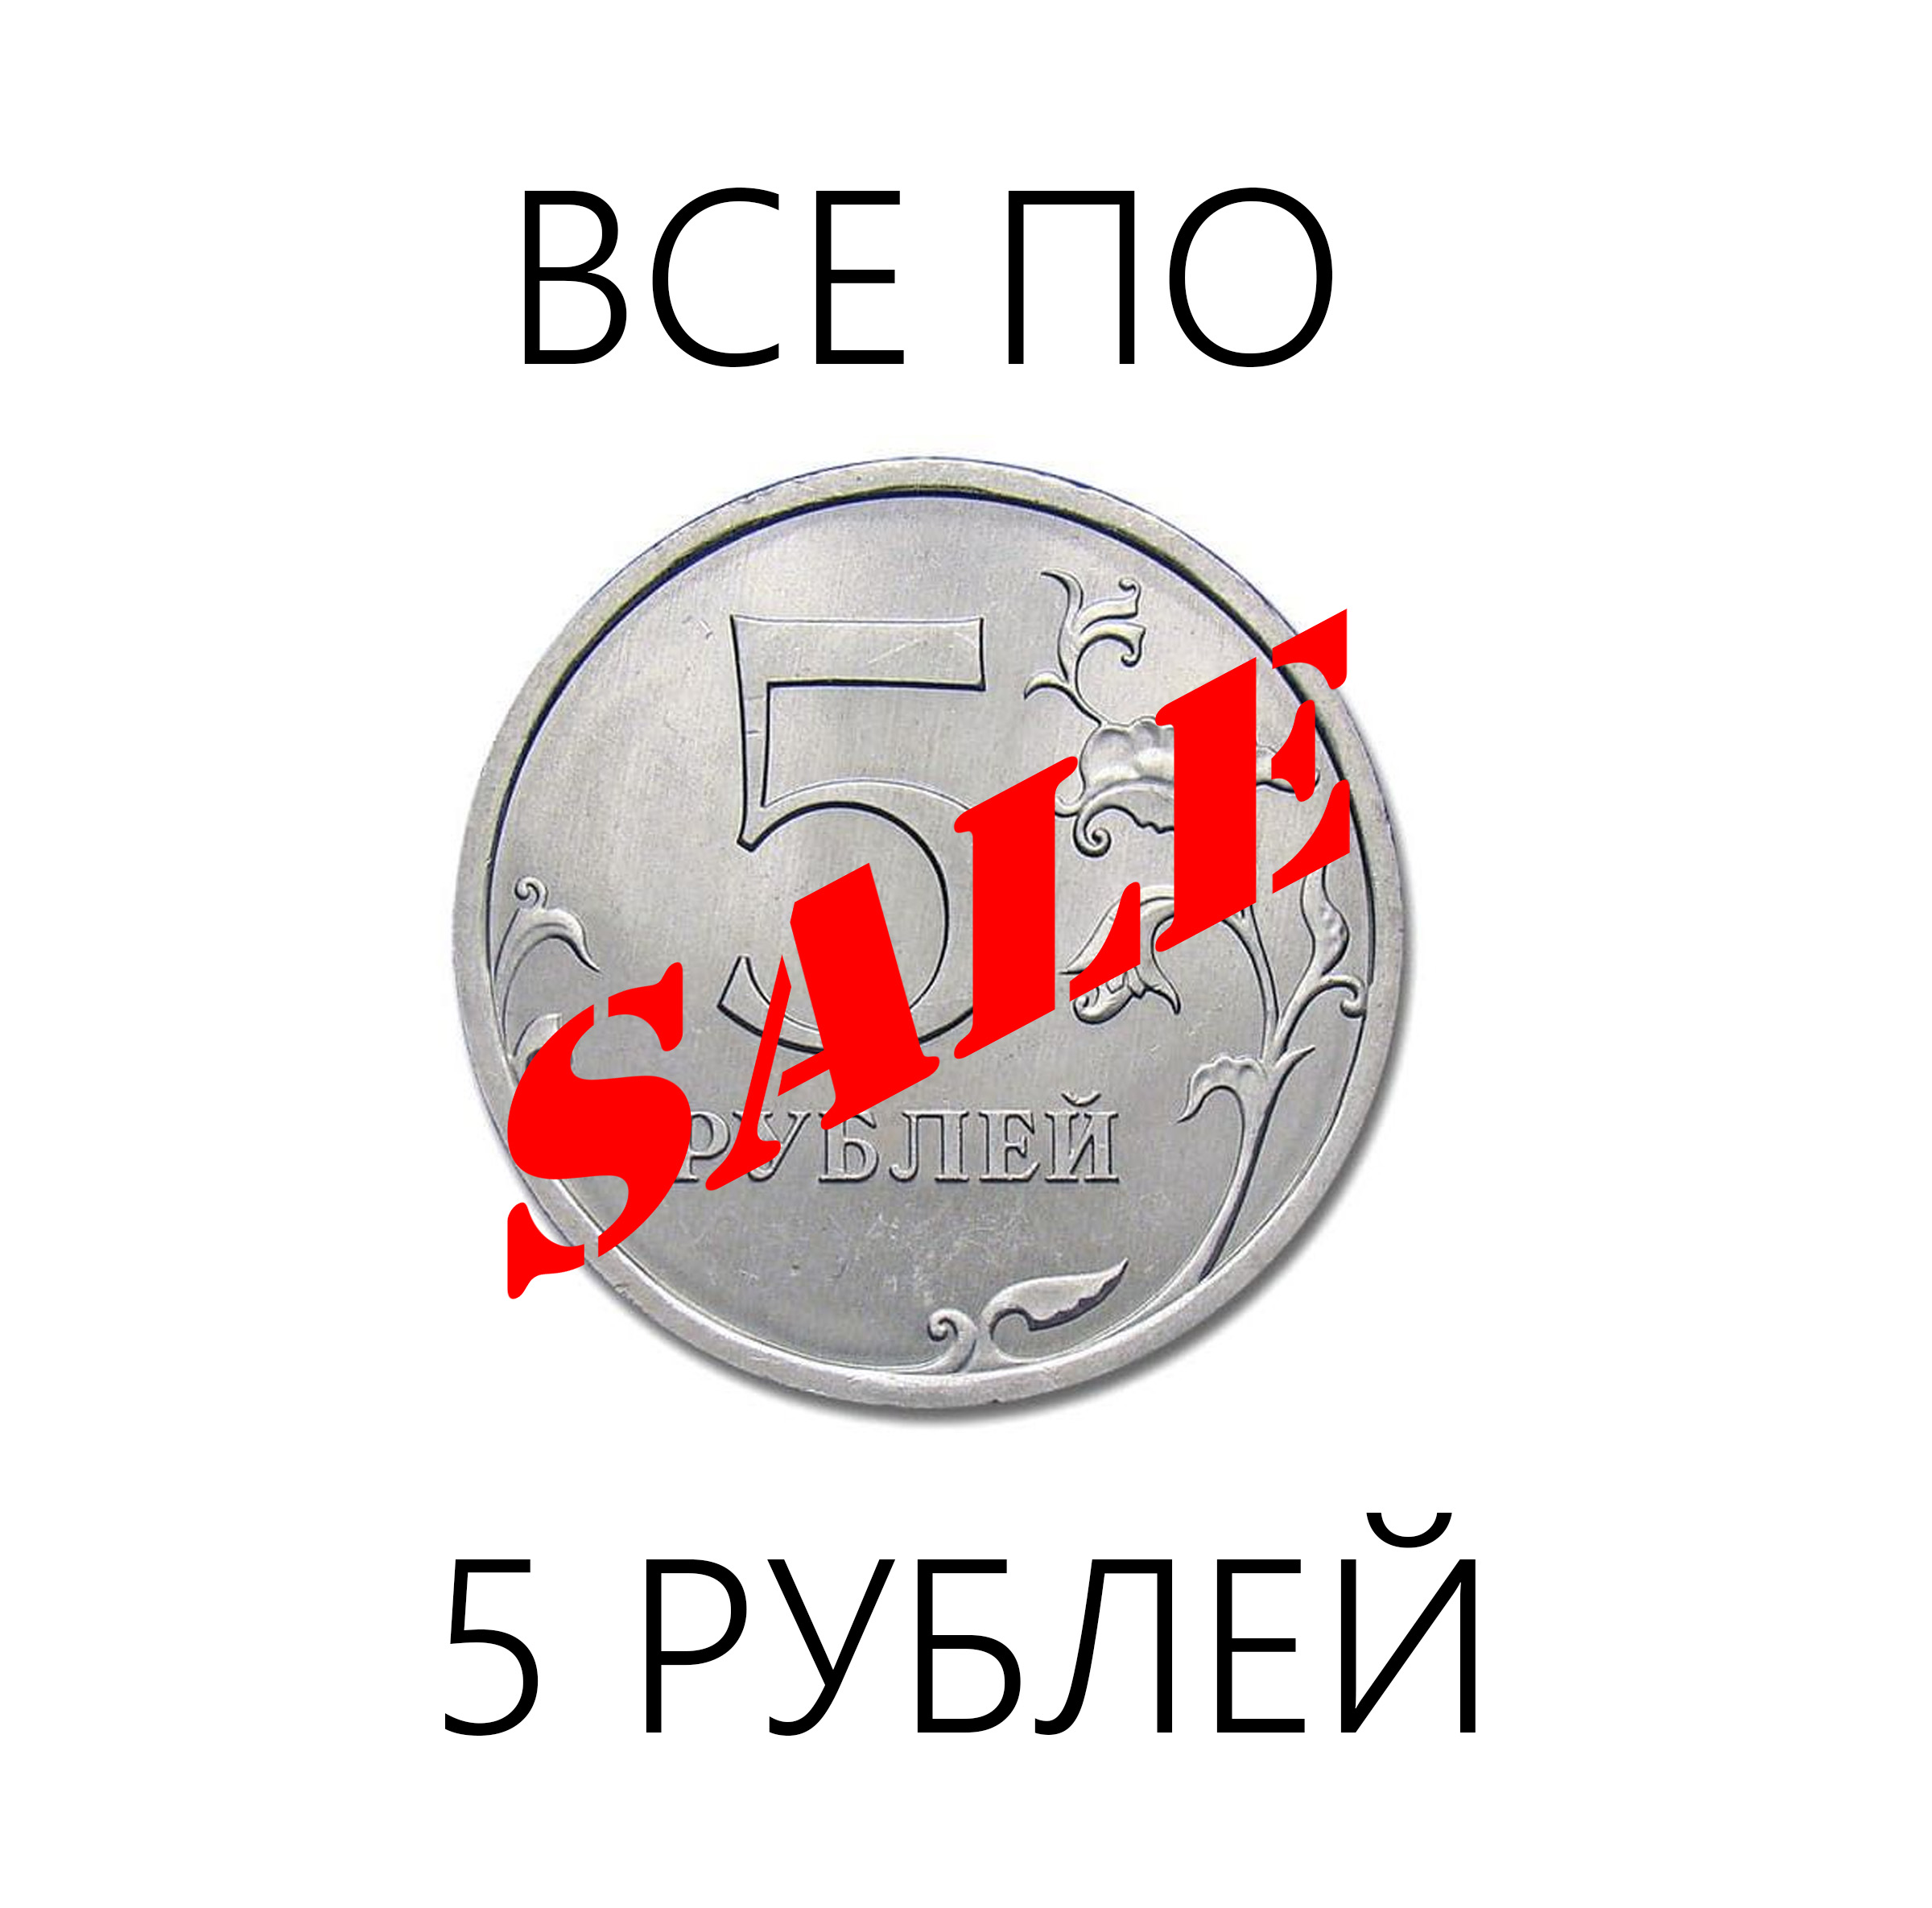 Распродажа товаров по 5 рублей